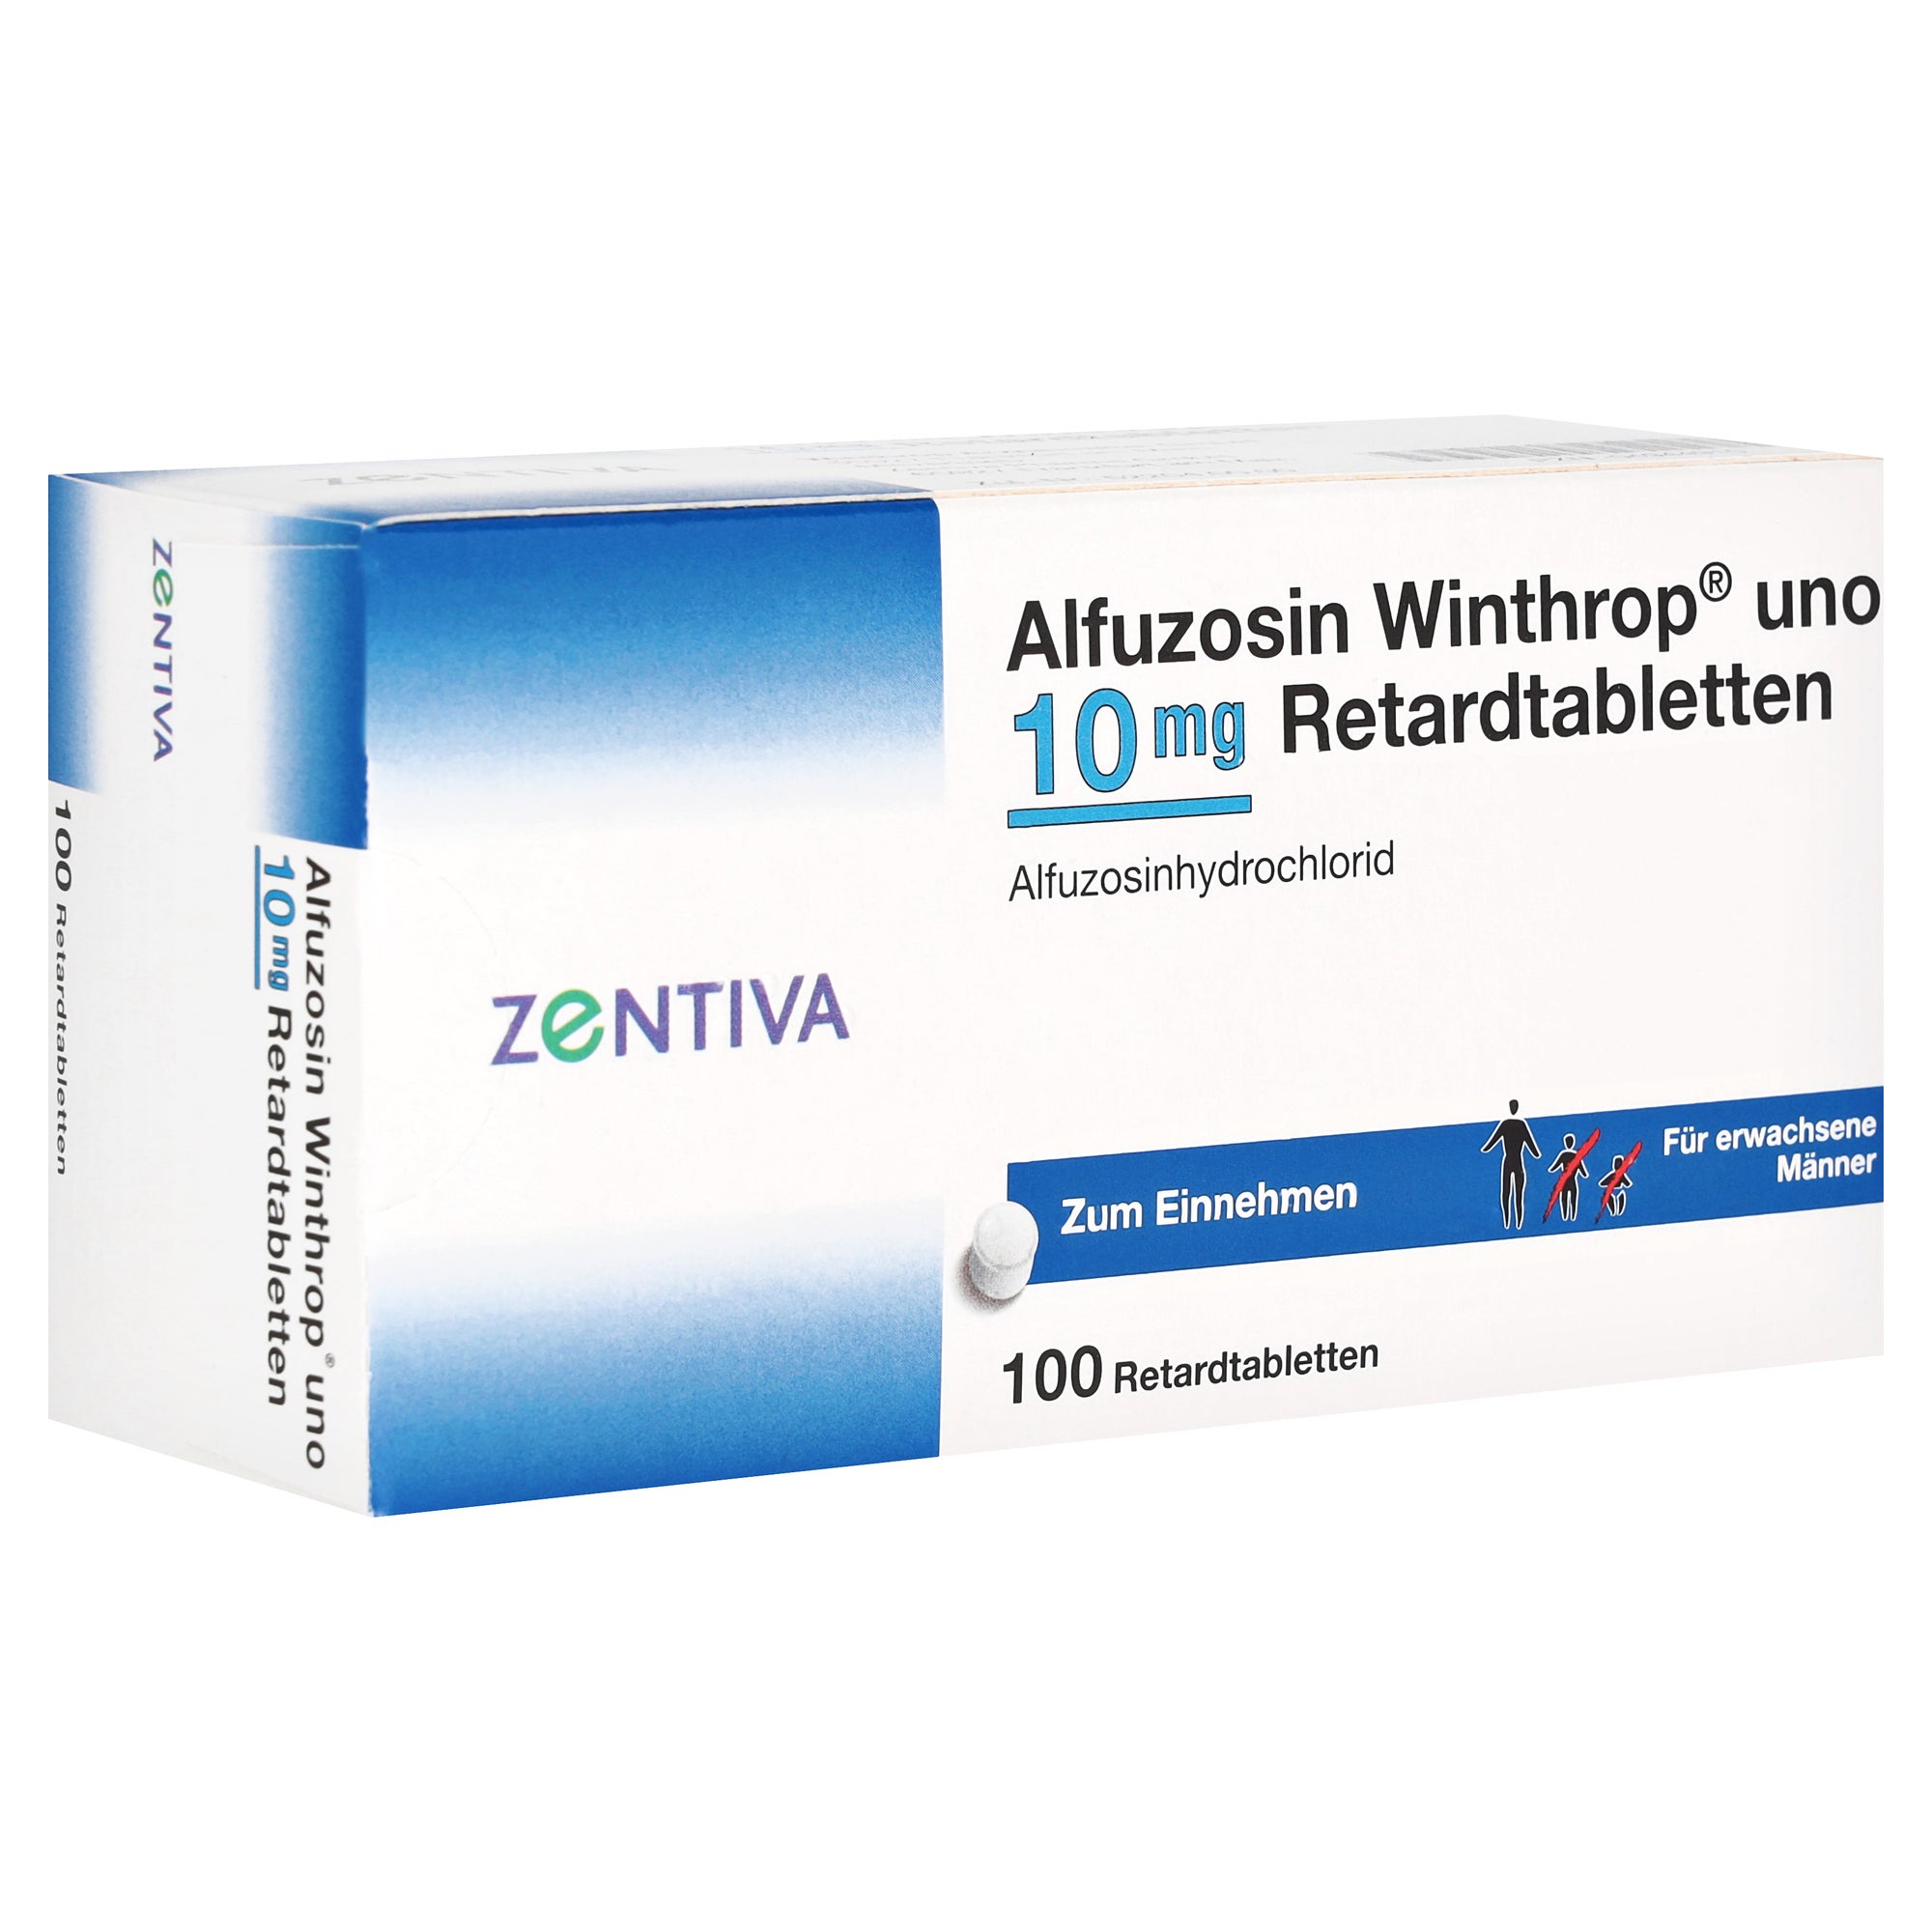 ALFUZOSIN Winthrop Uno 10 mg Retardtabletten, 100 St. online